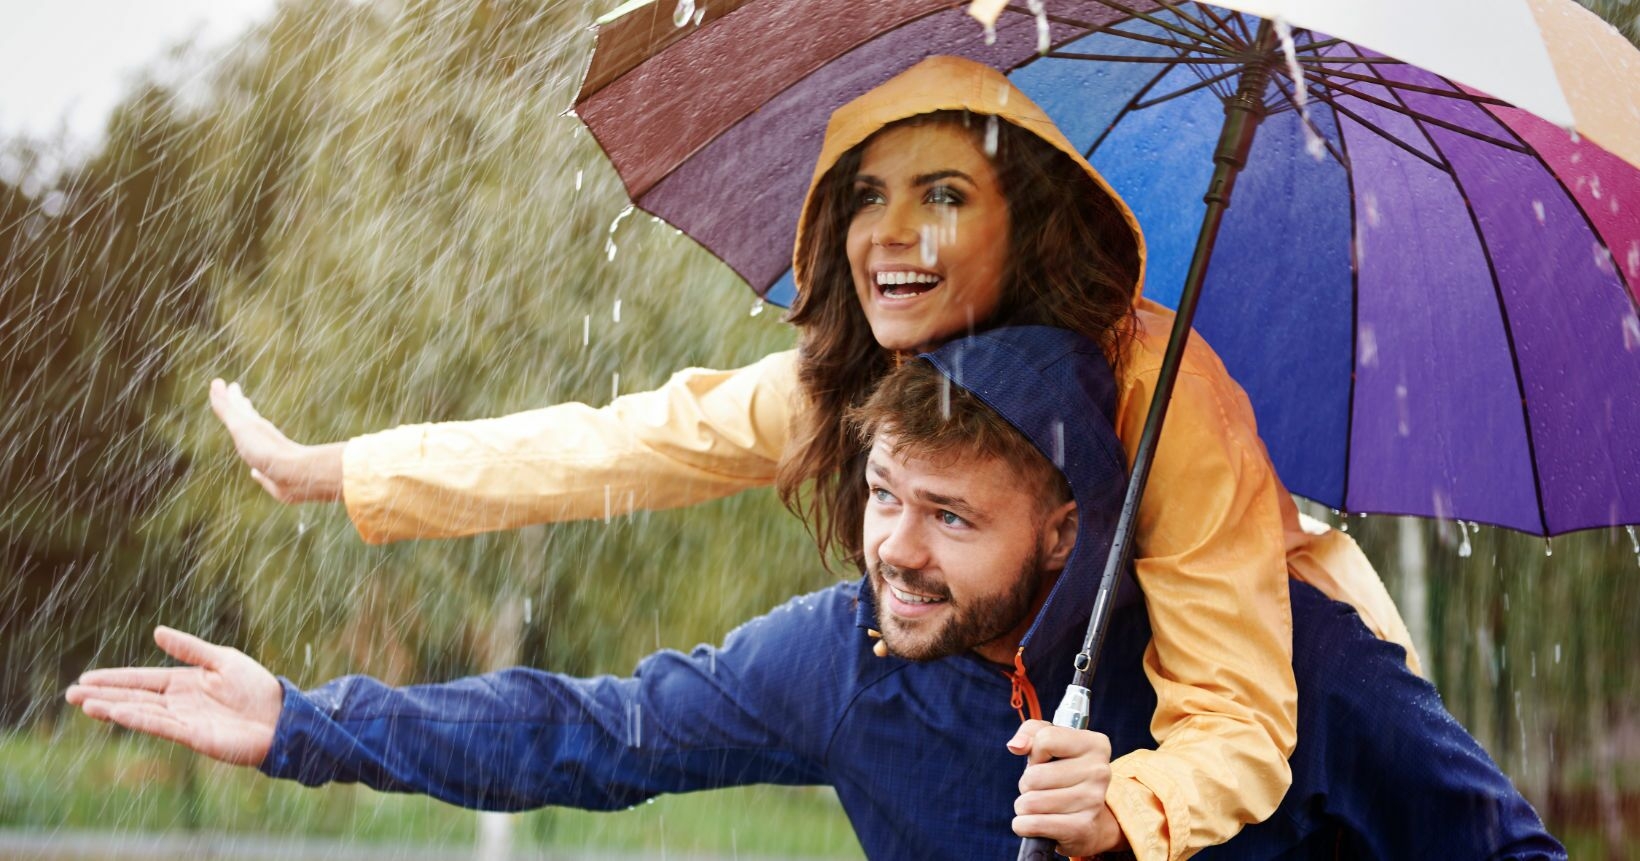 Одолжил ей зонтик. Человек с зонтом. Под зонтиком. Счастливые люди с зонтами. Мужчина с зонтом.